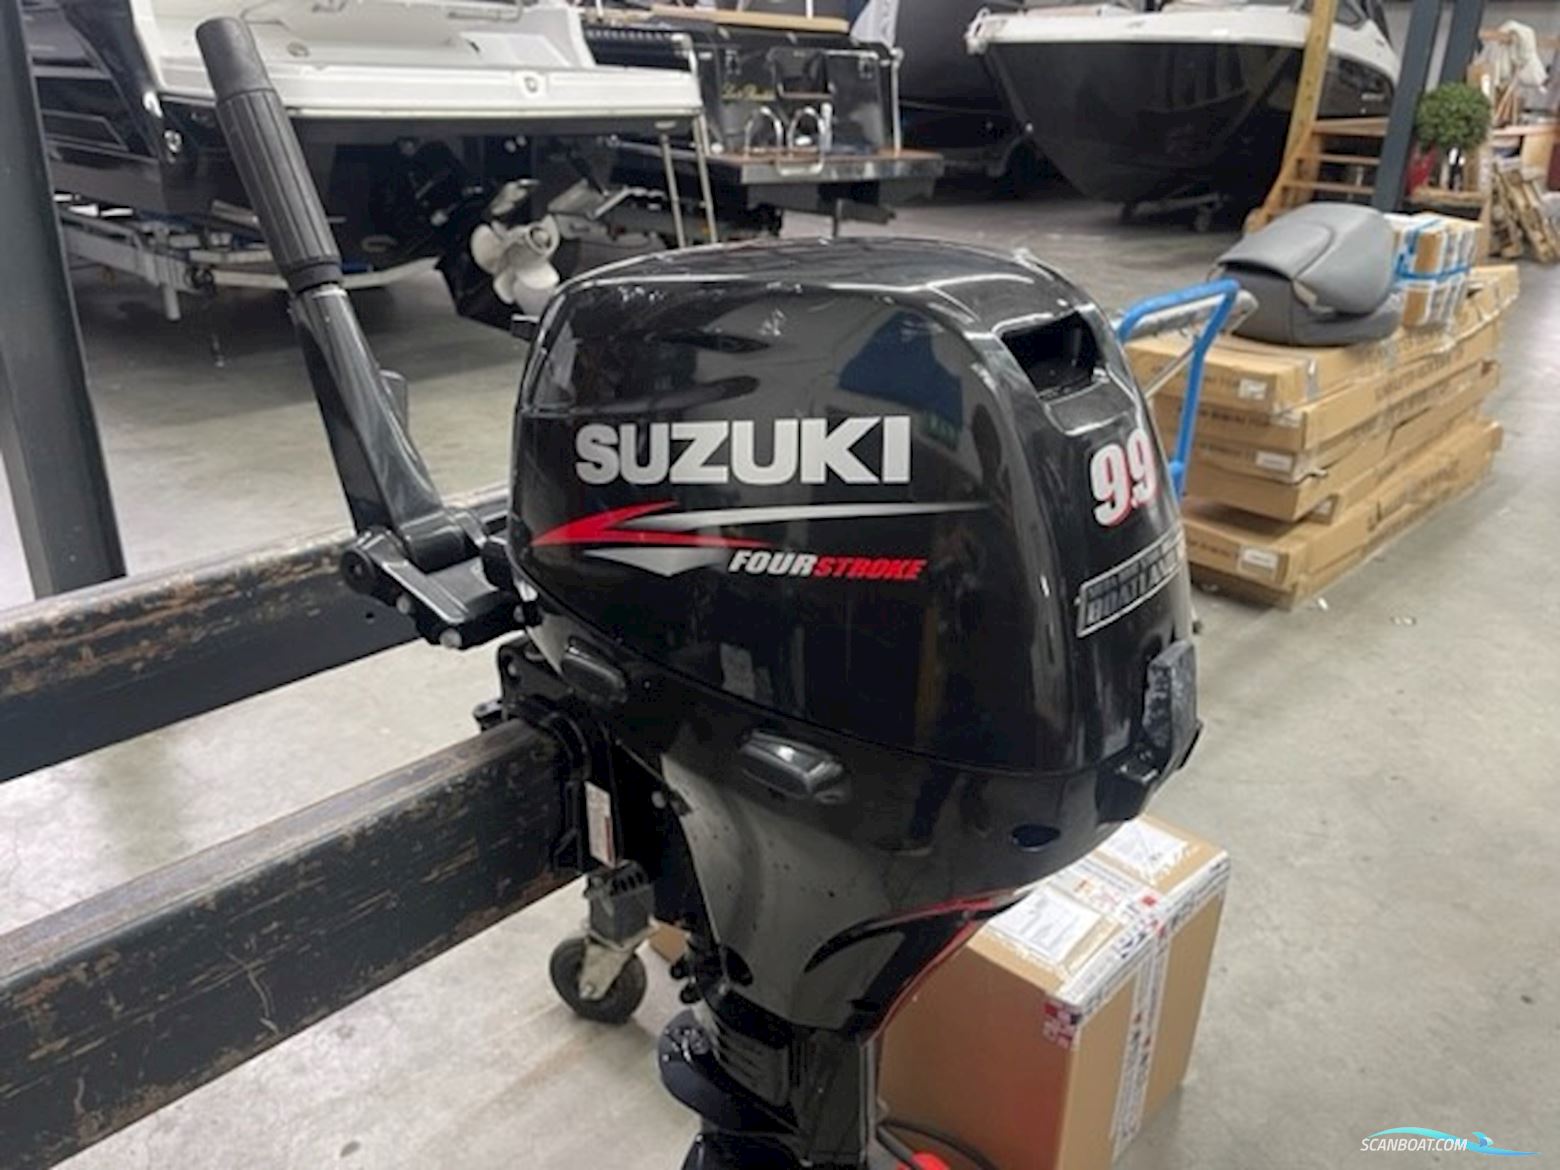 Suzuki DF9.9S Motoren 2015, The Netherlands